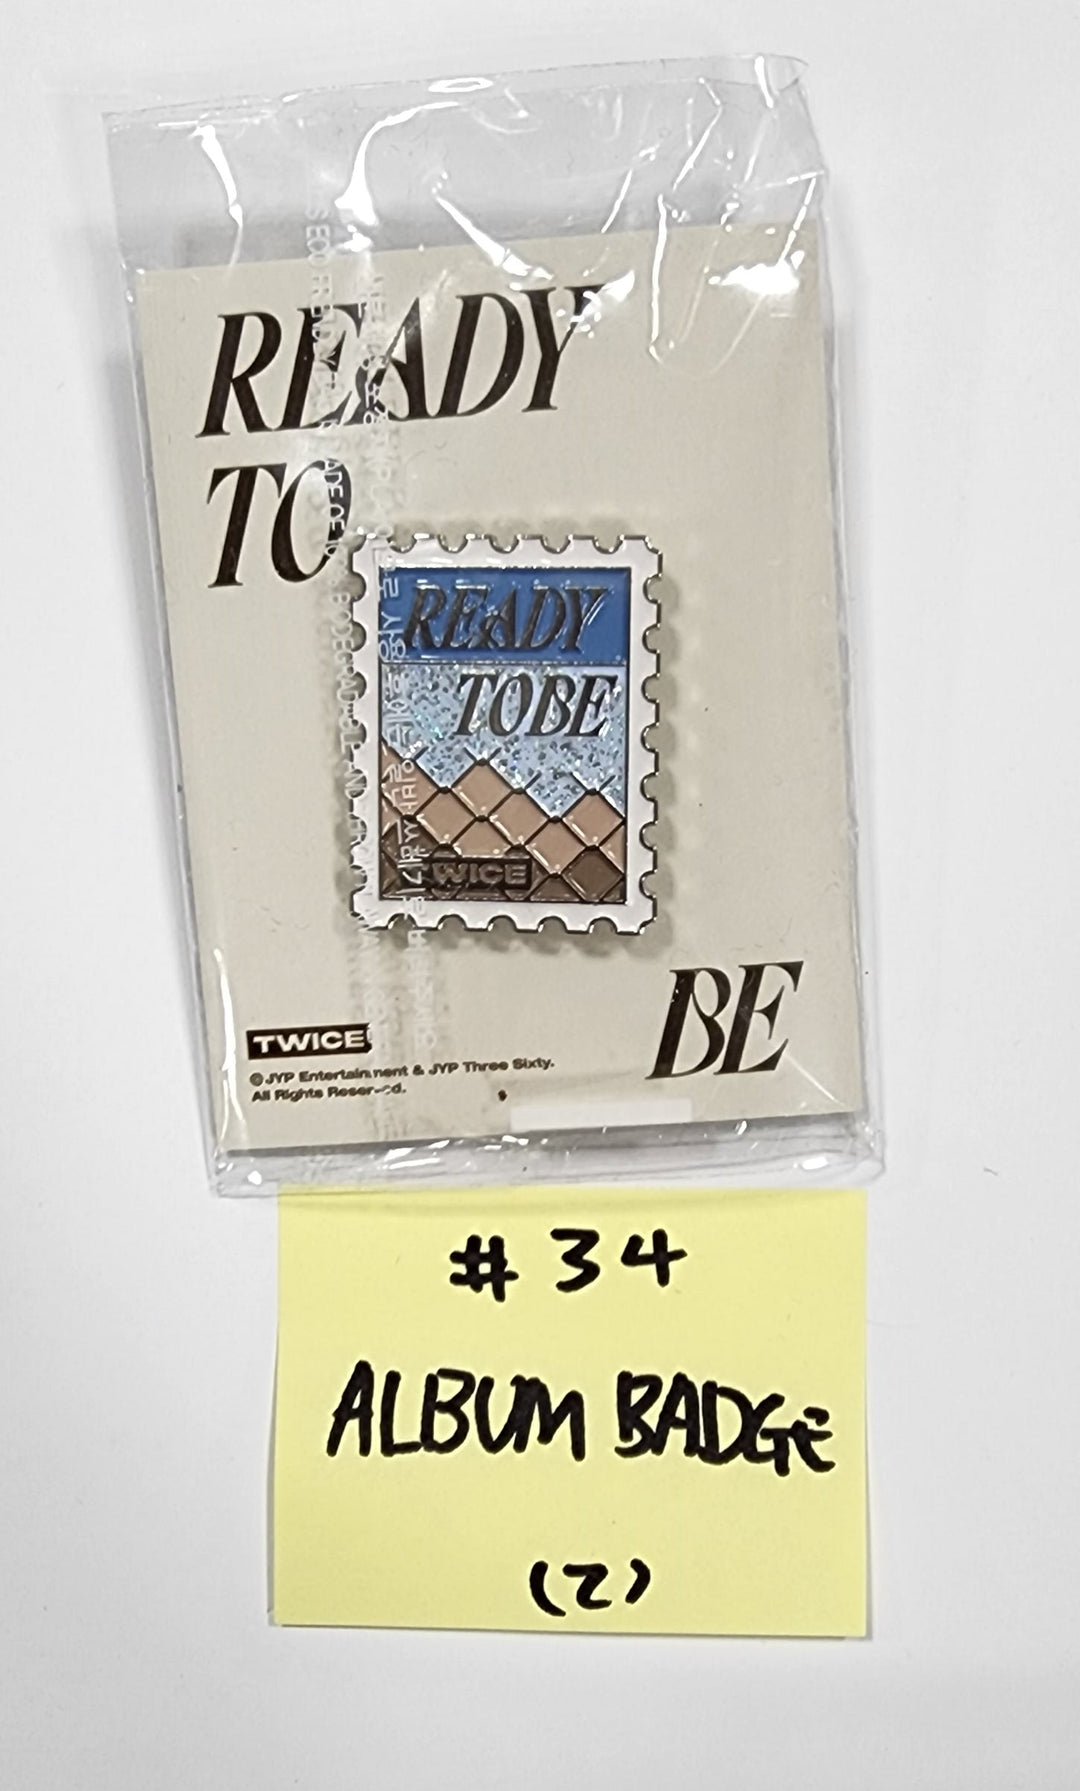 트와이스 "READY TO BE" - 사운드웨이브 럭키드로우 이벤트 PVC 포토카드